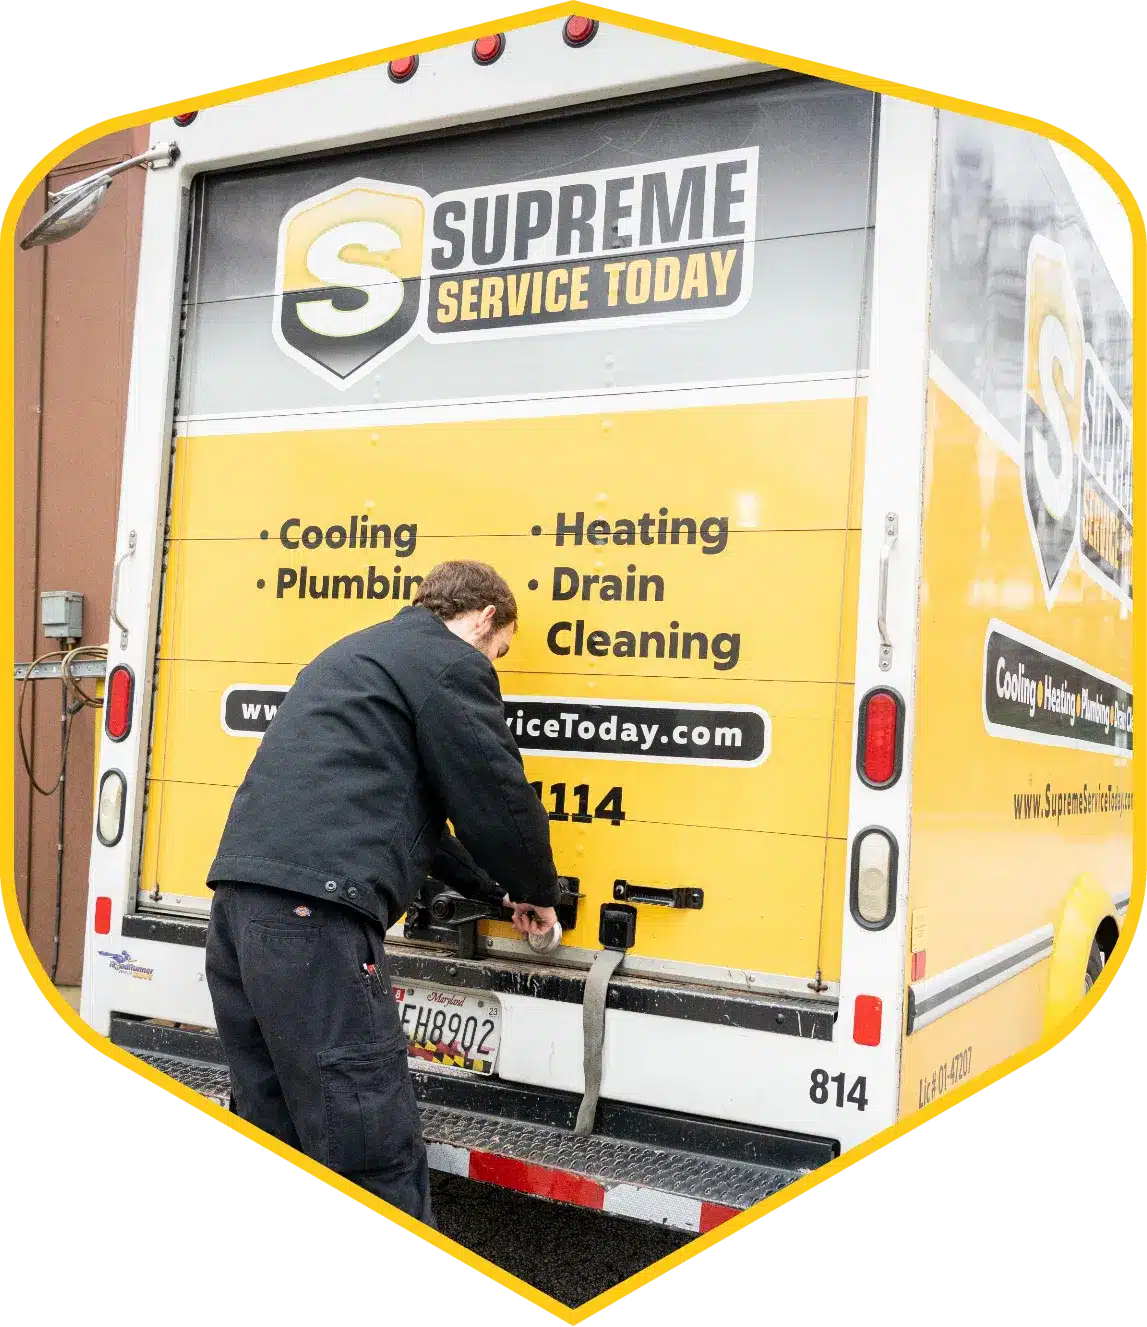 supreme-service-today-van